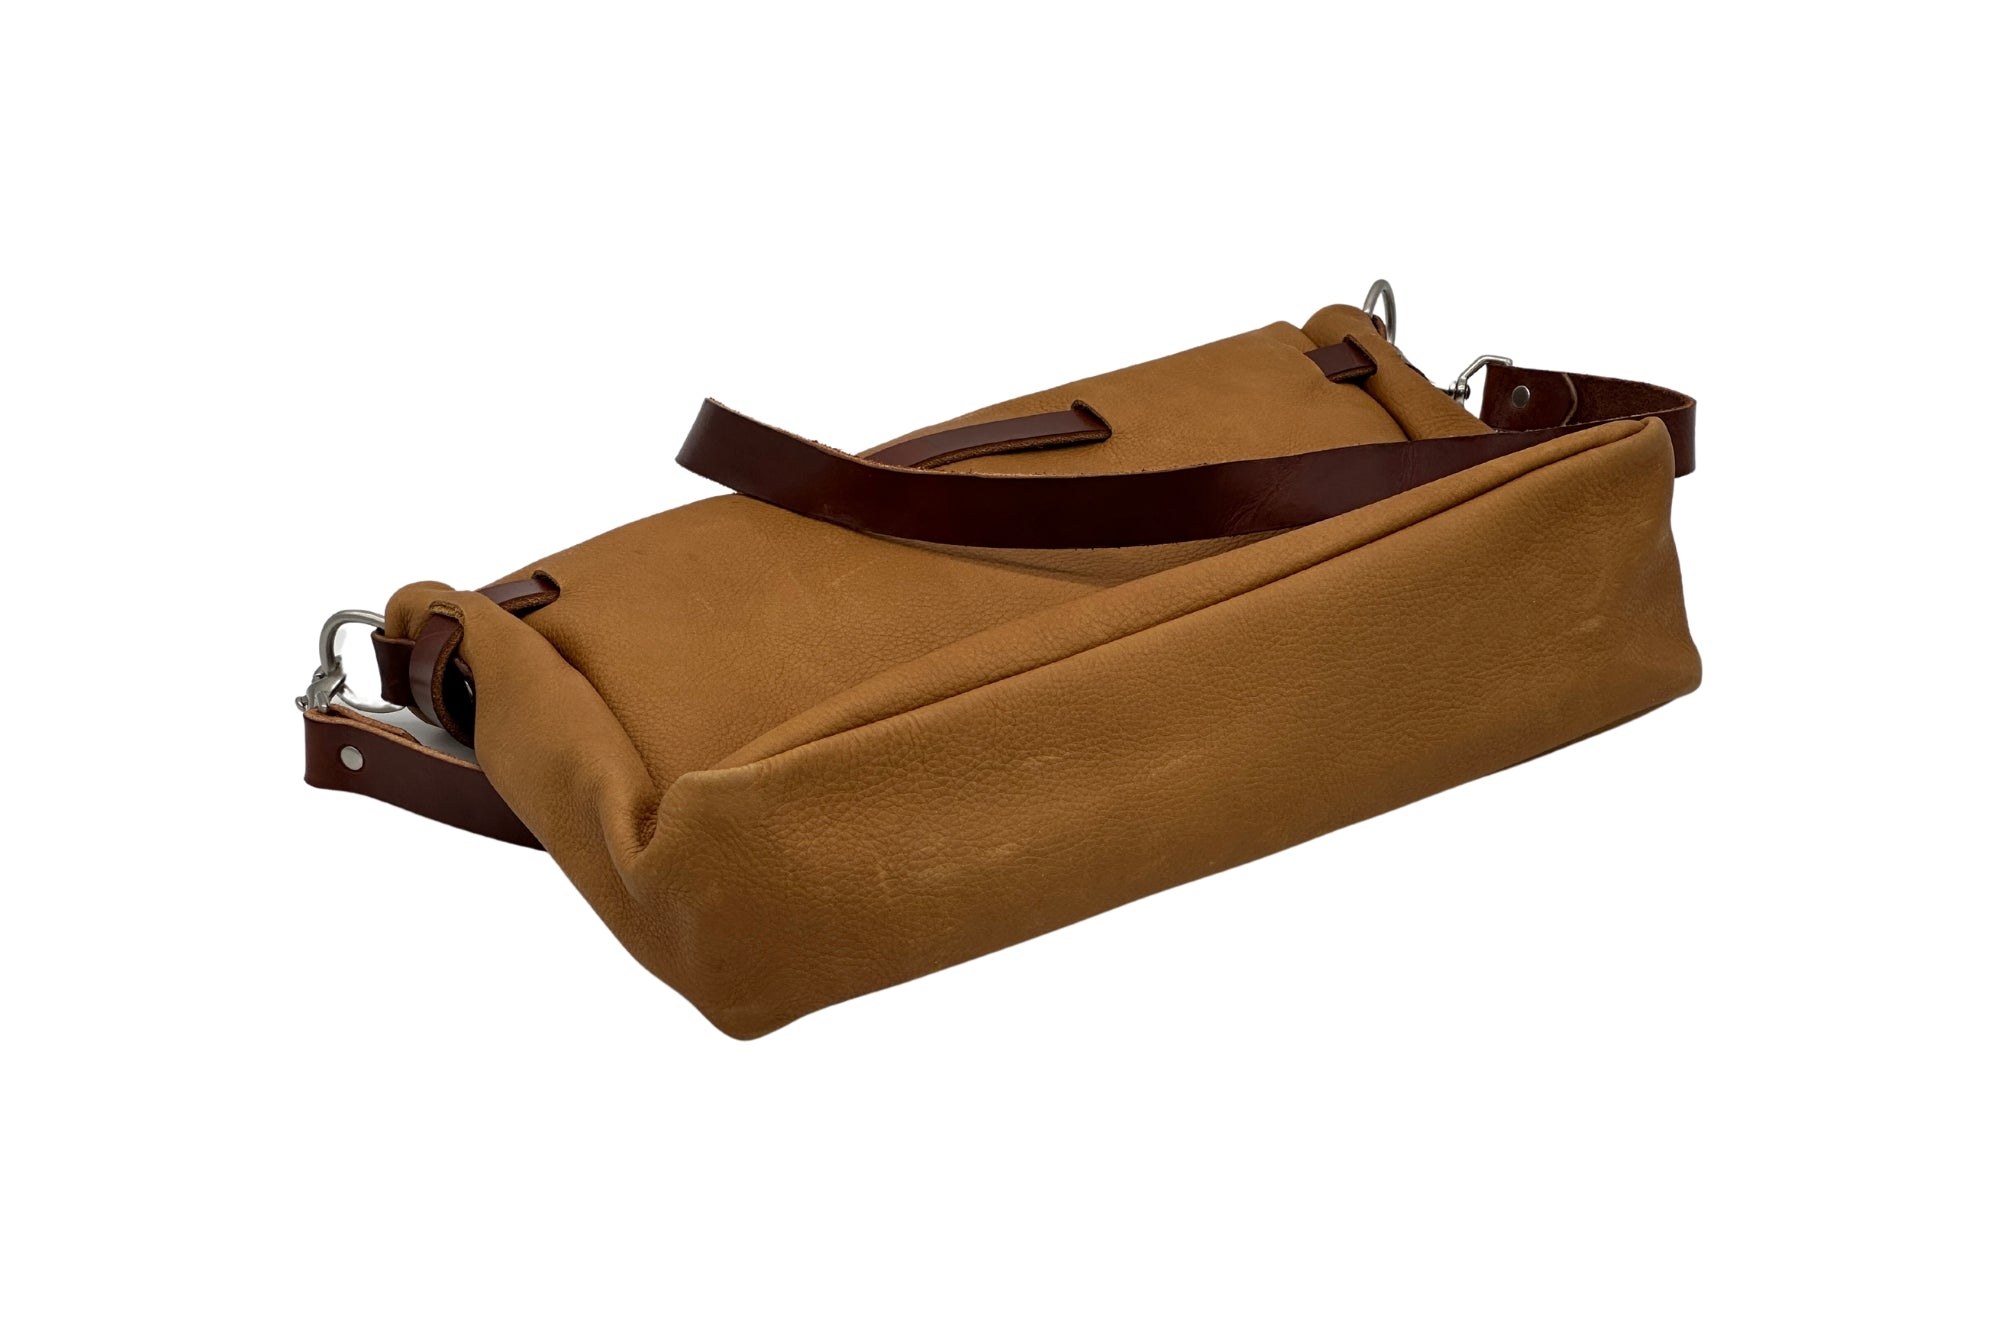 SEASONED No. 4320 Large Mailbag in Denali Tan with Interior Pocket